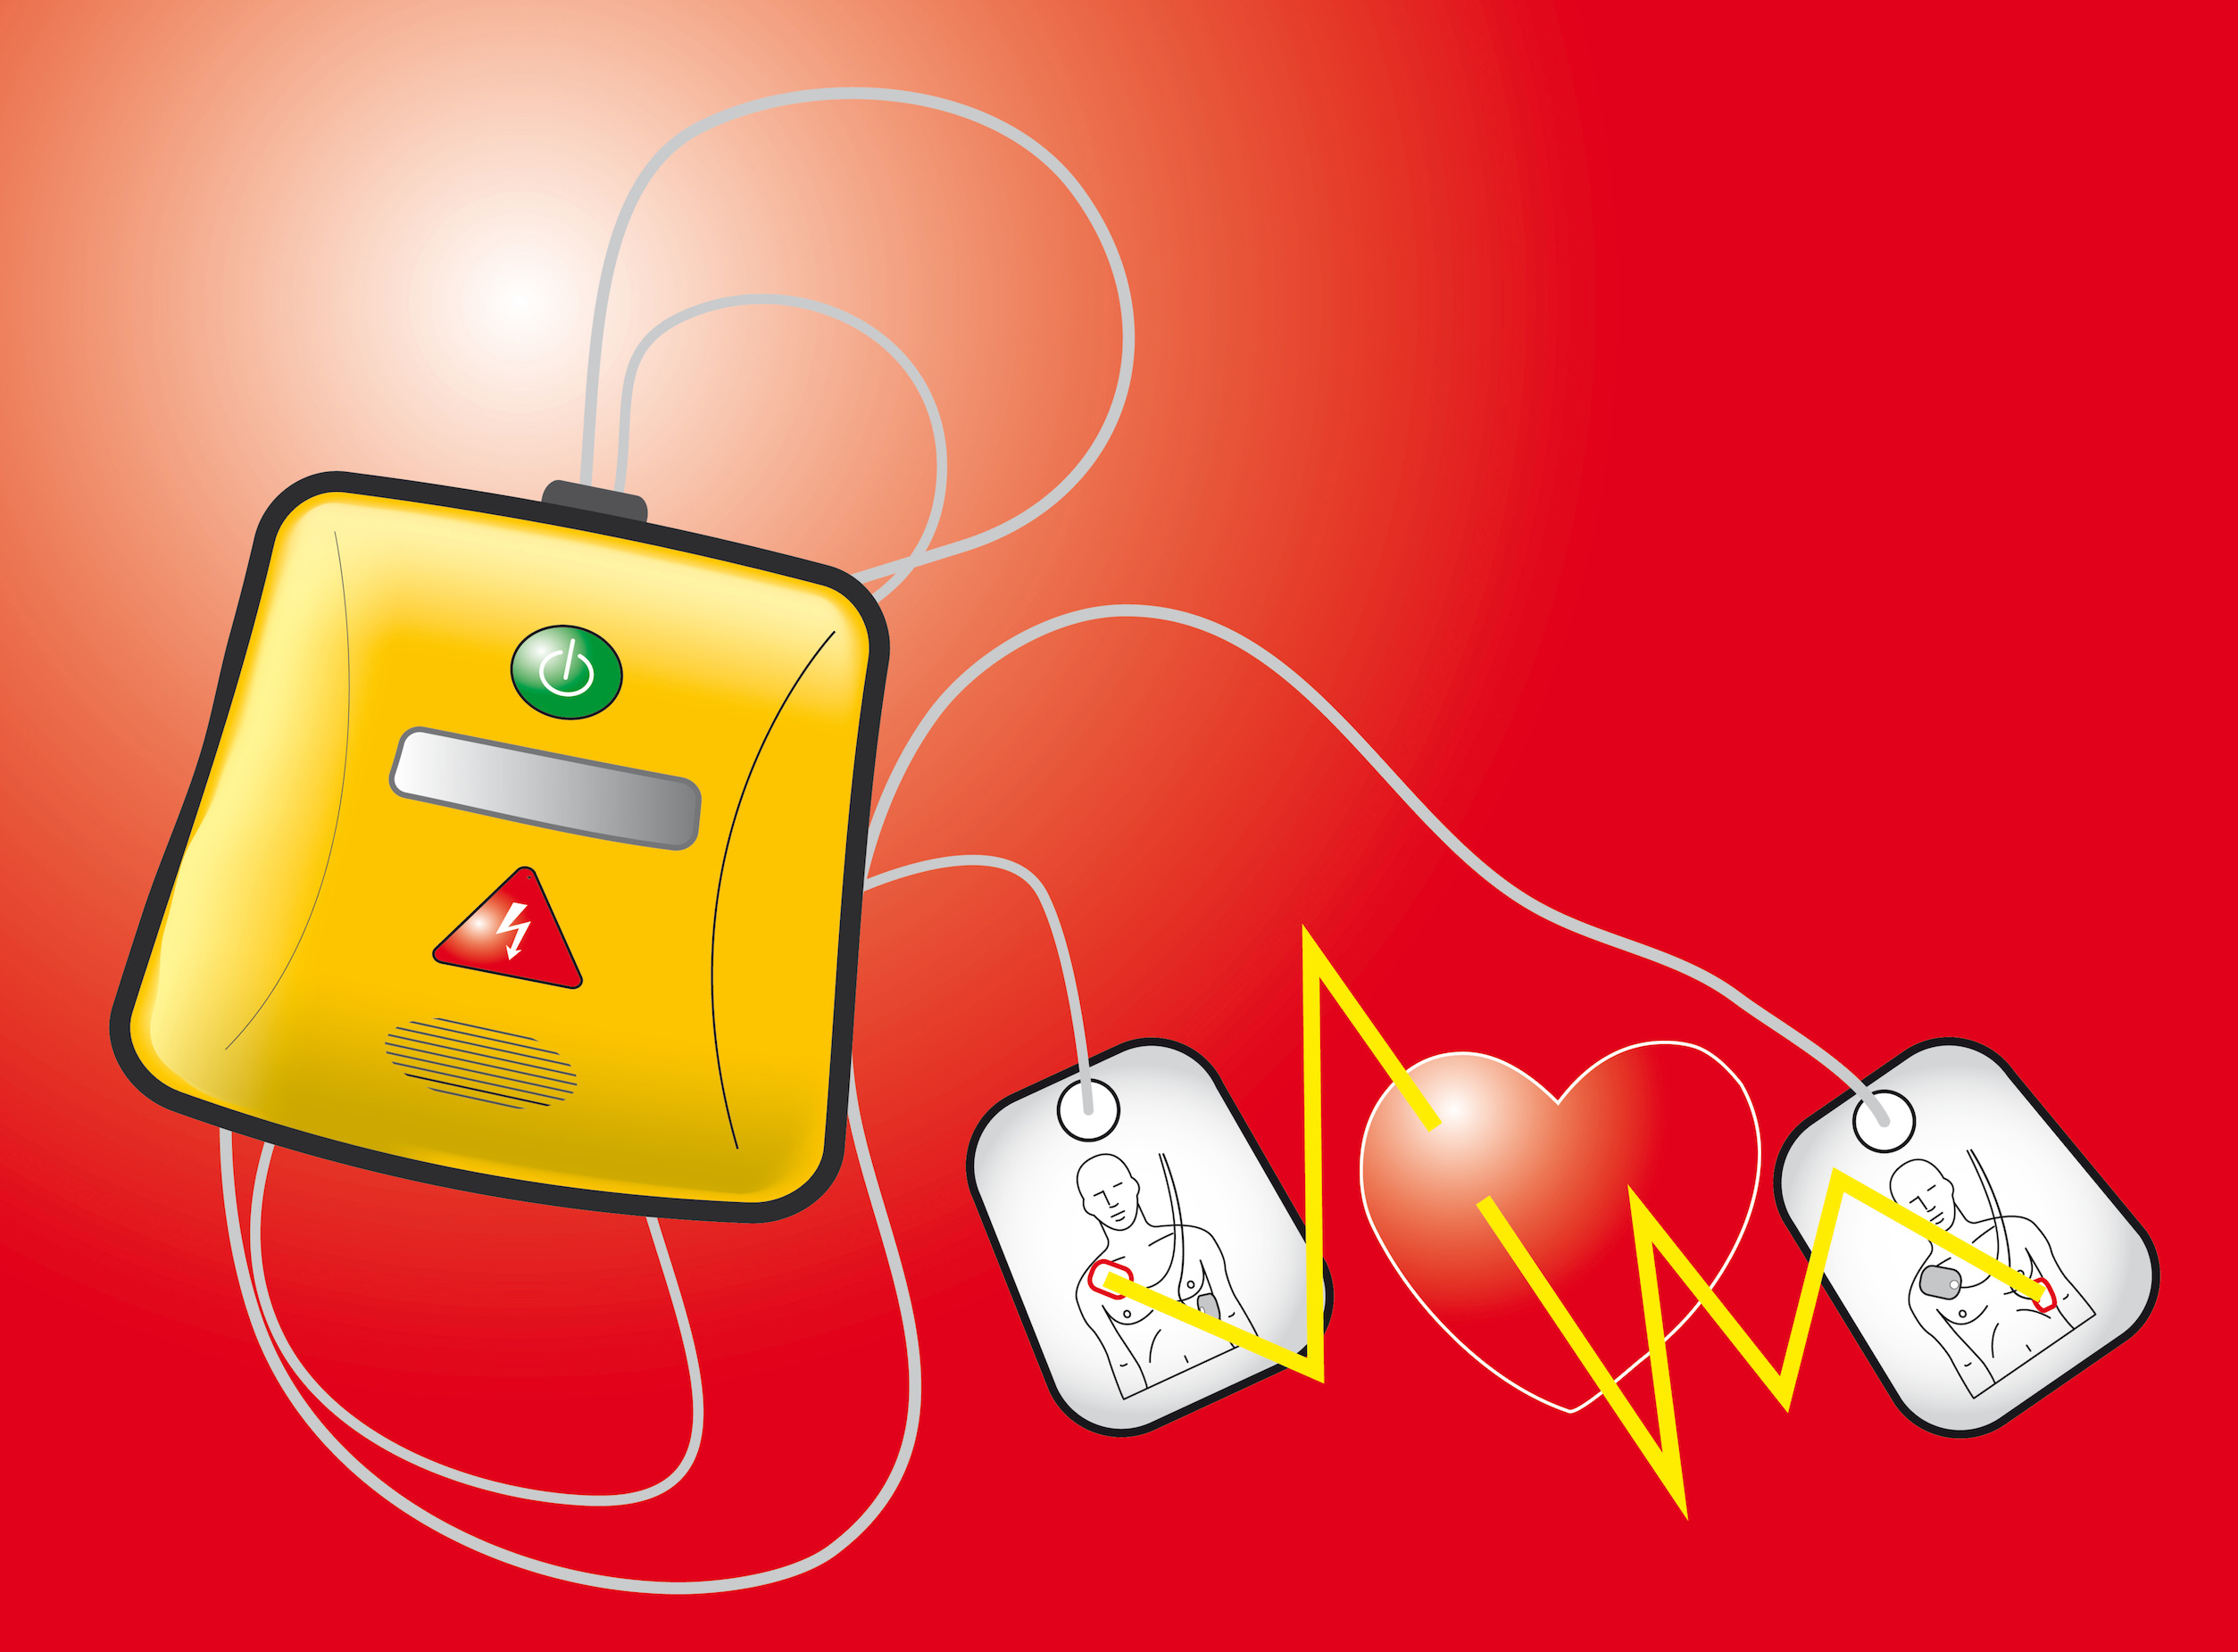 Savoir utiliser un défibrillateur peut sauver des vies. © Fabien Bègue, Adobe Stock